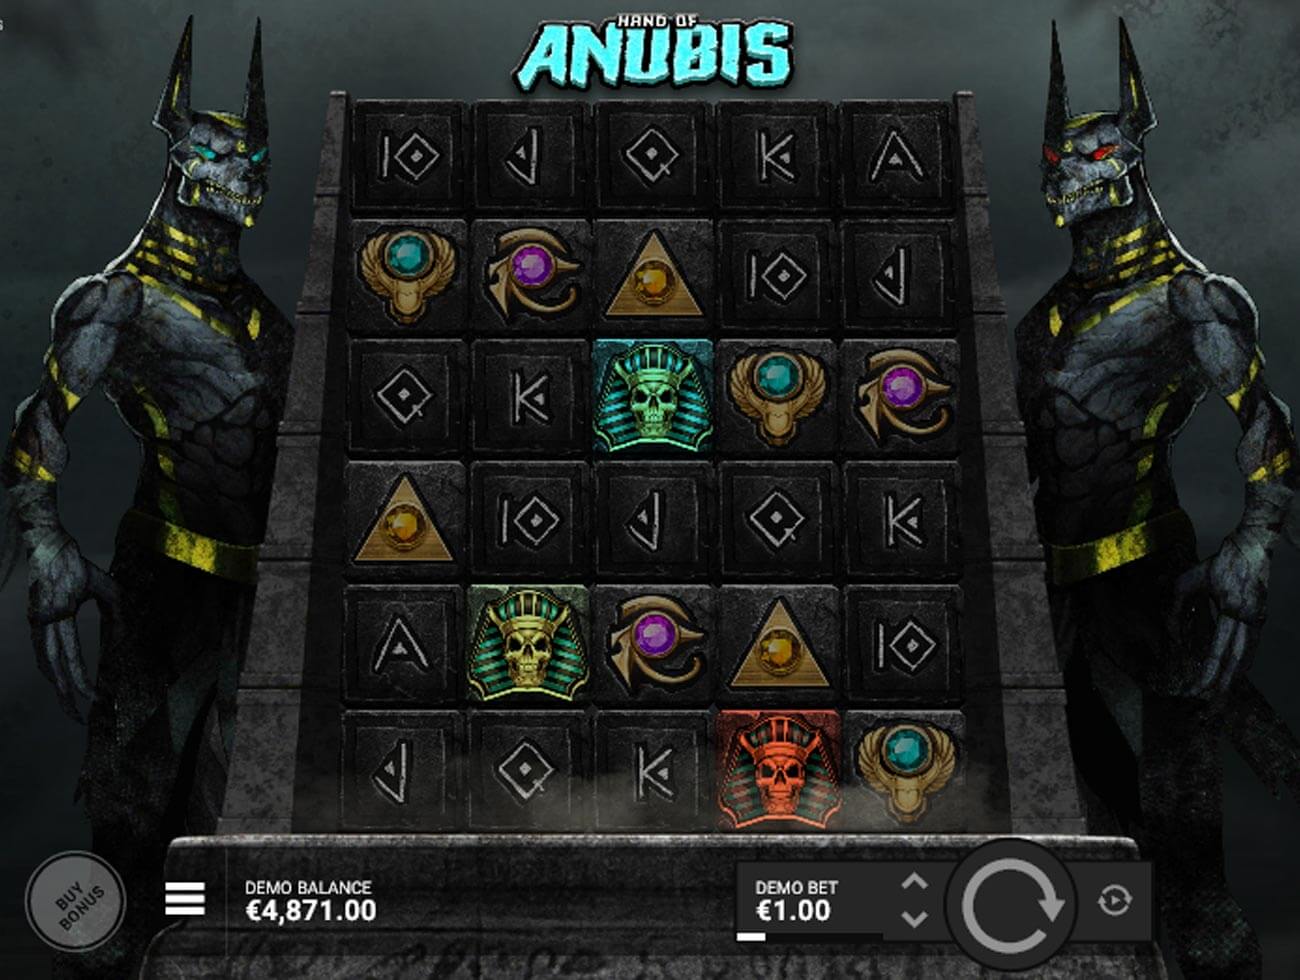 Hand of Anubis Bonus Symbols